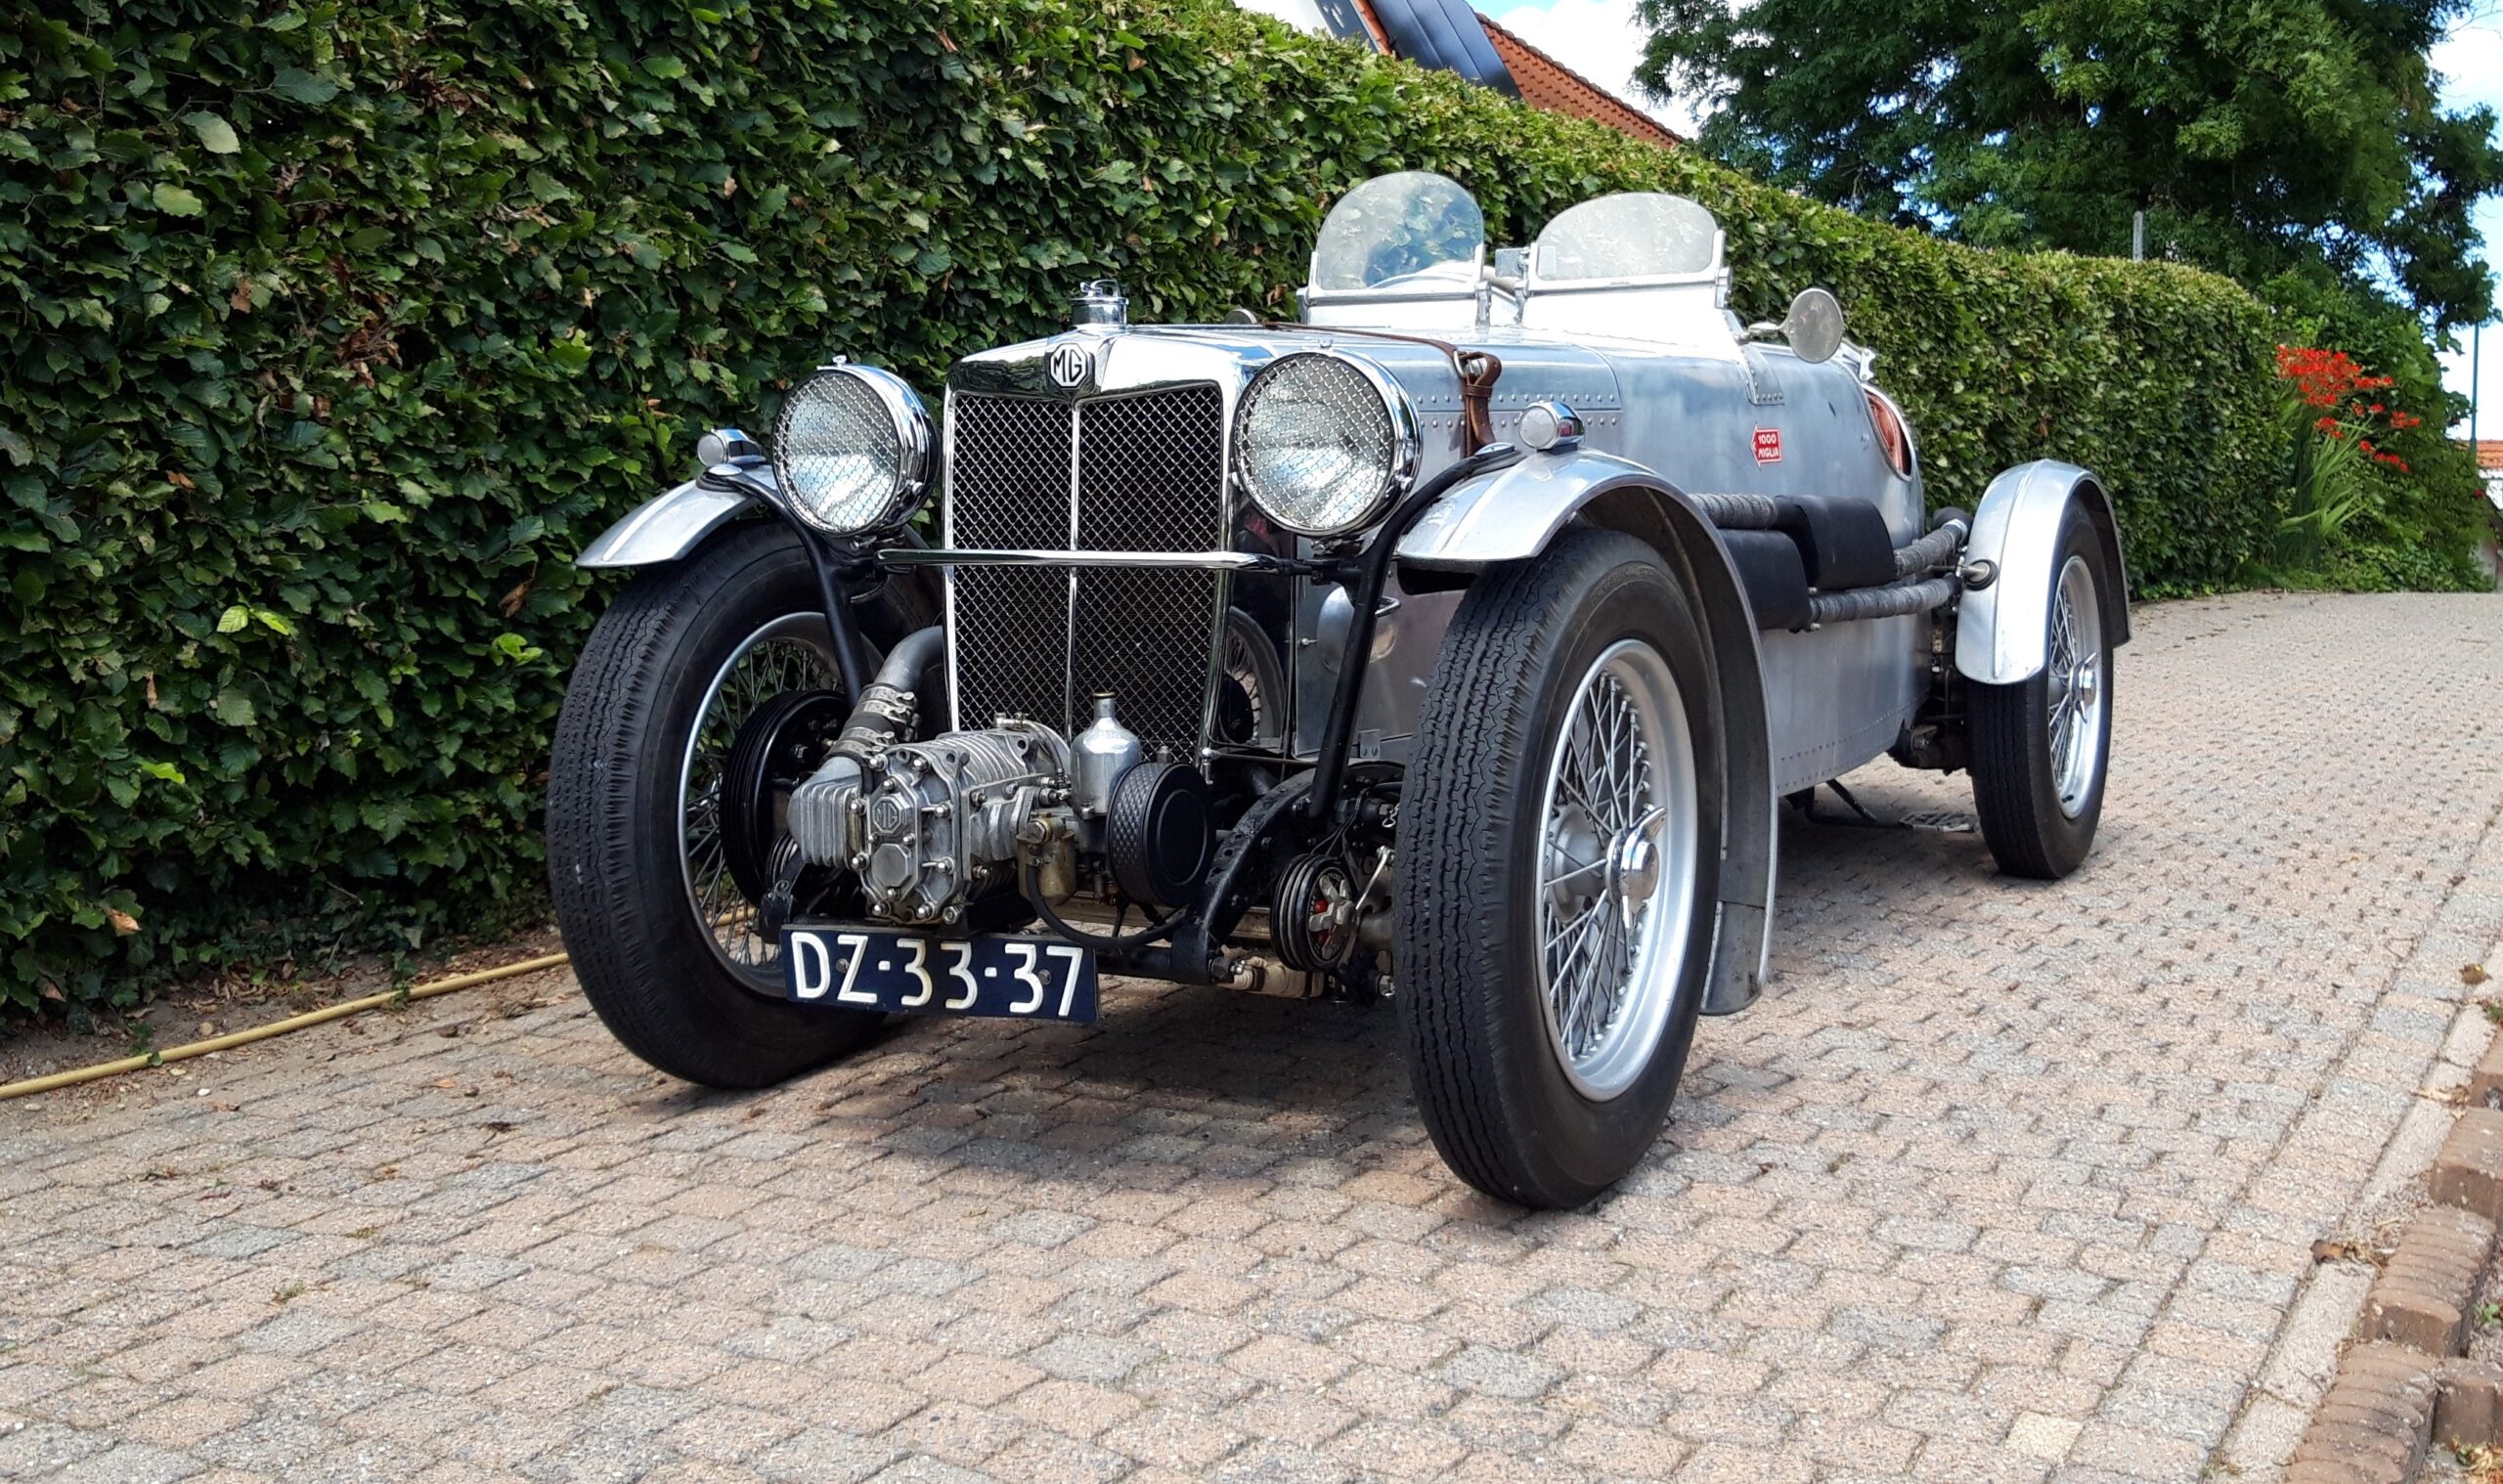 MG TA-Q 1340 cc 1937